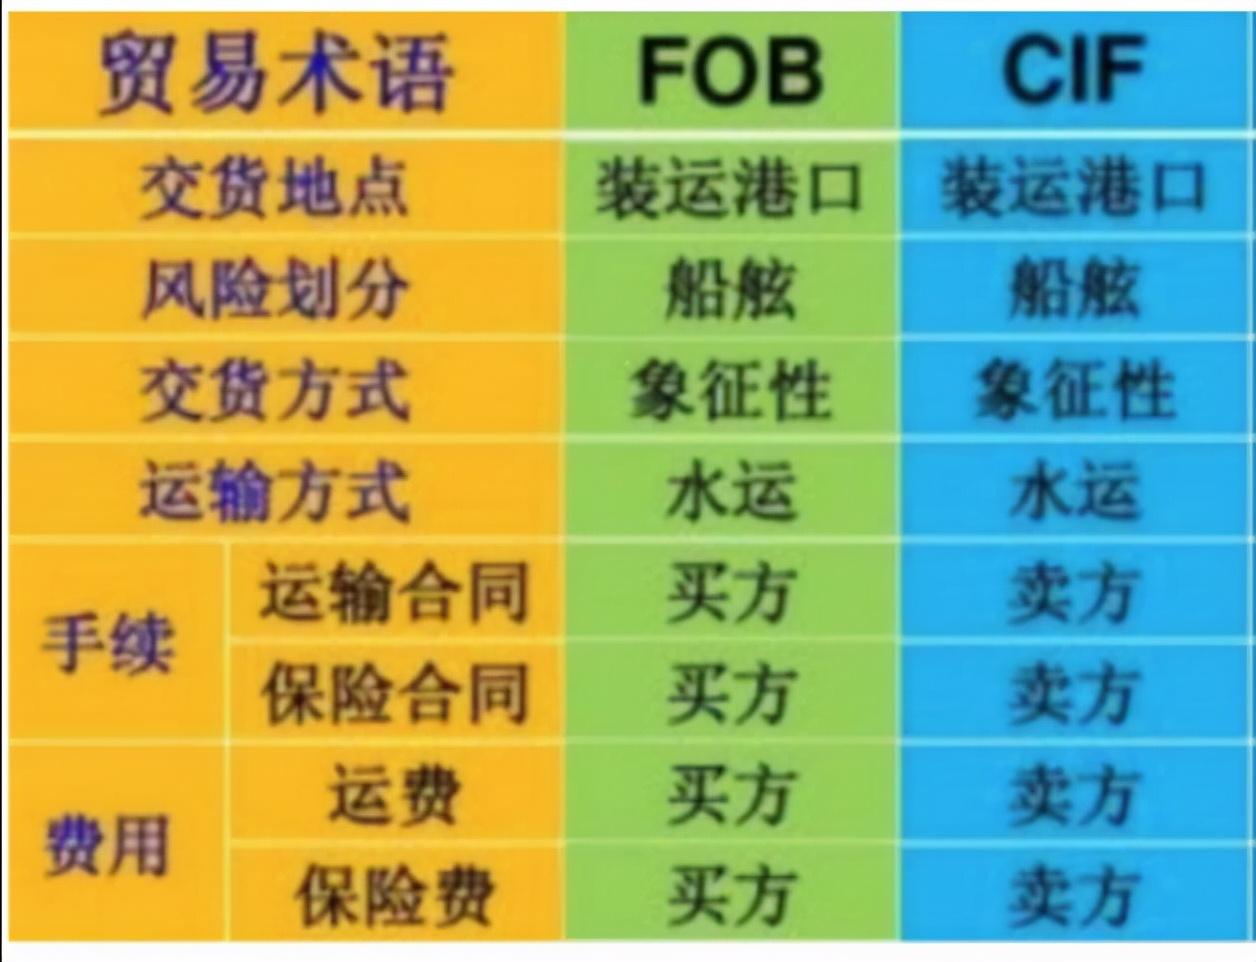 贸易术语fob和cif的主要区别-米圈号